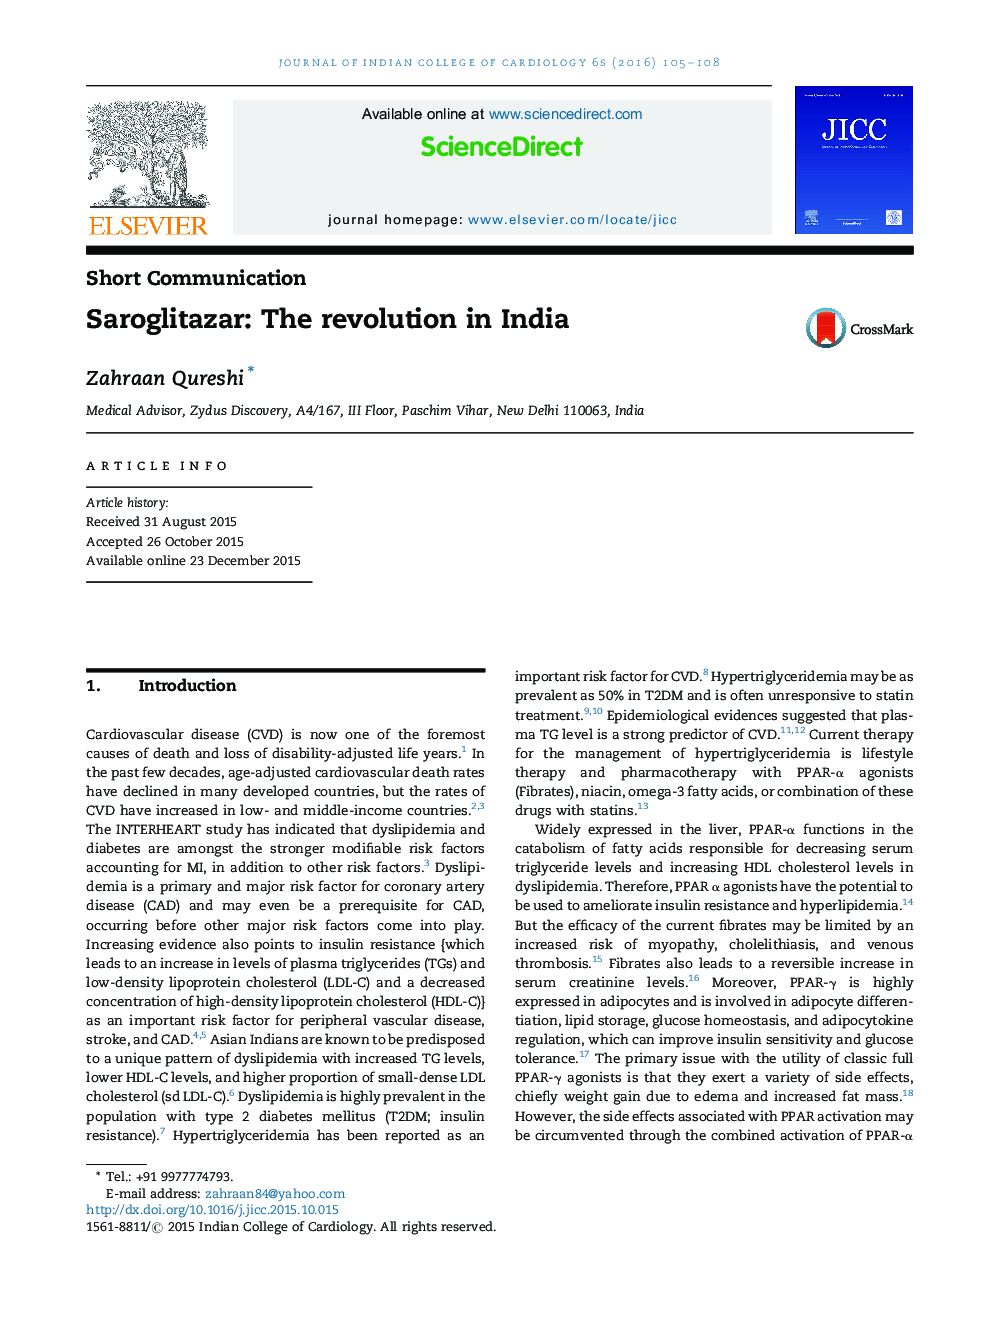 Saroglitazar: The revolution in India